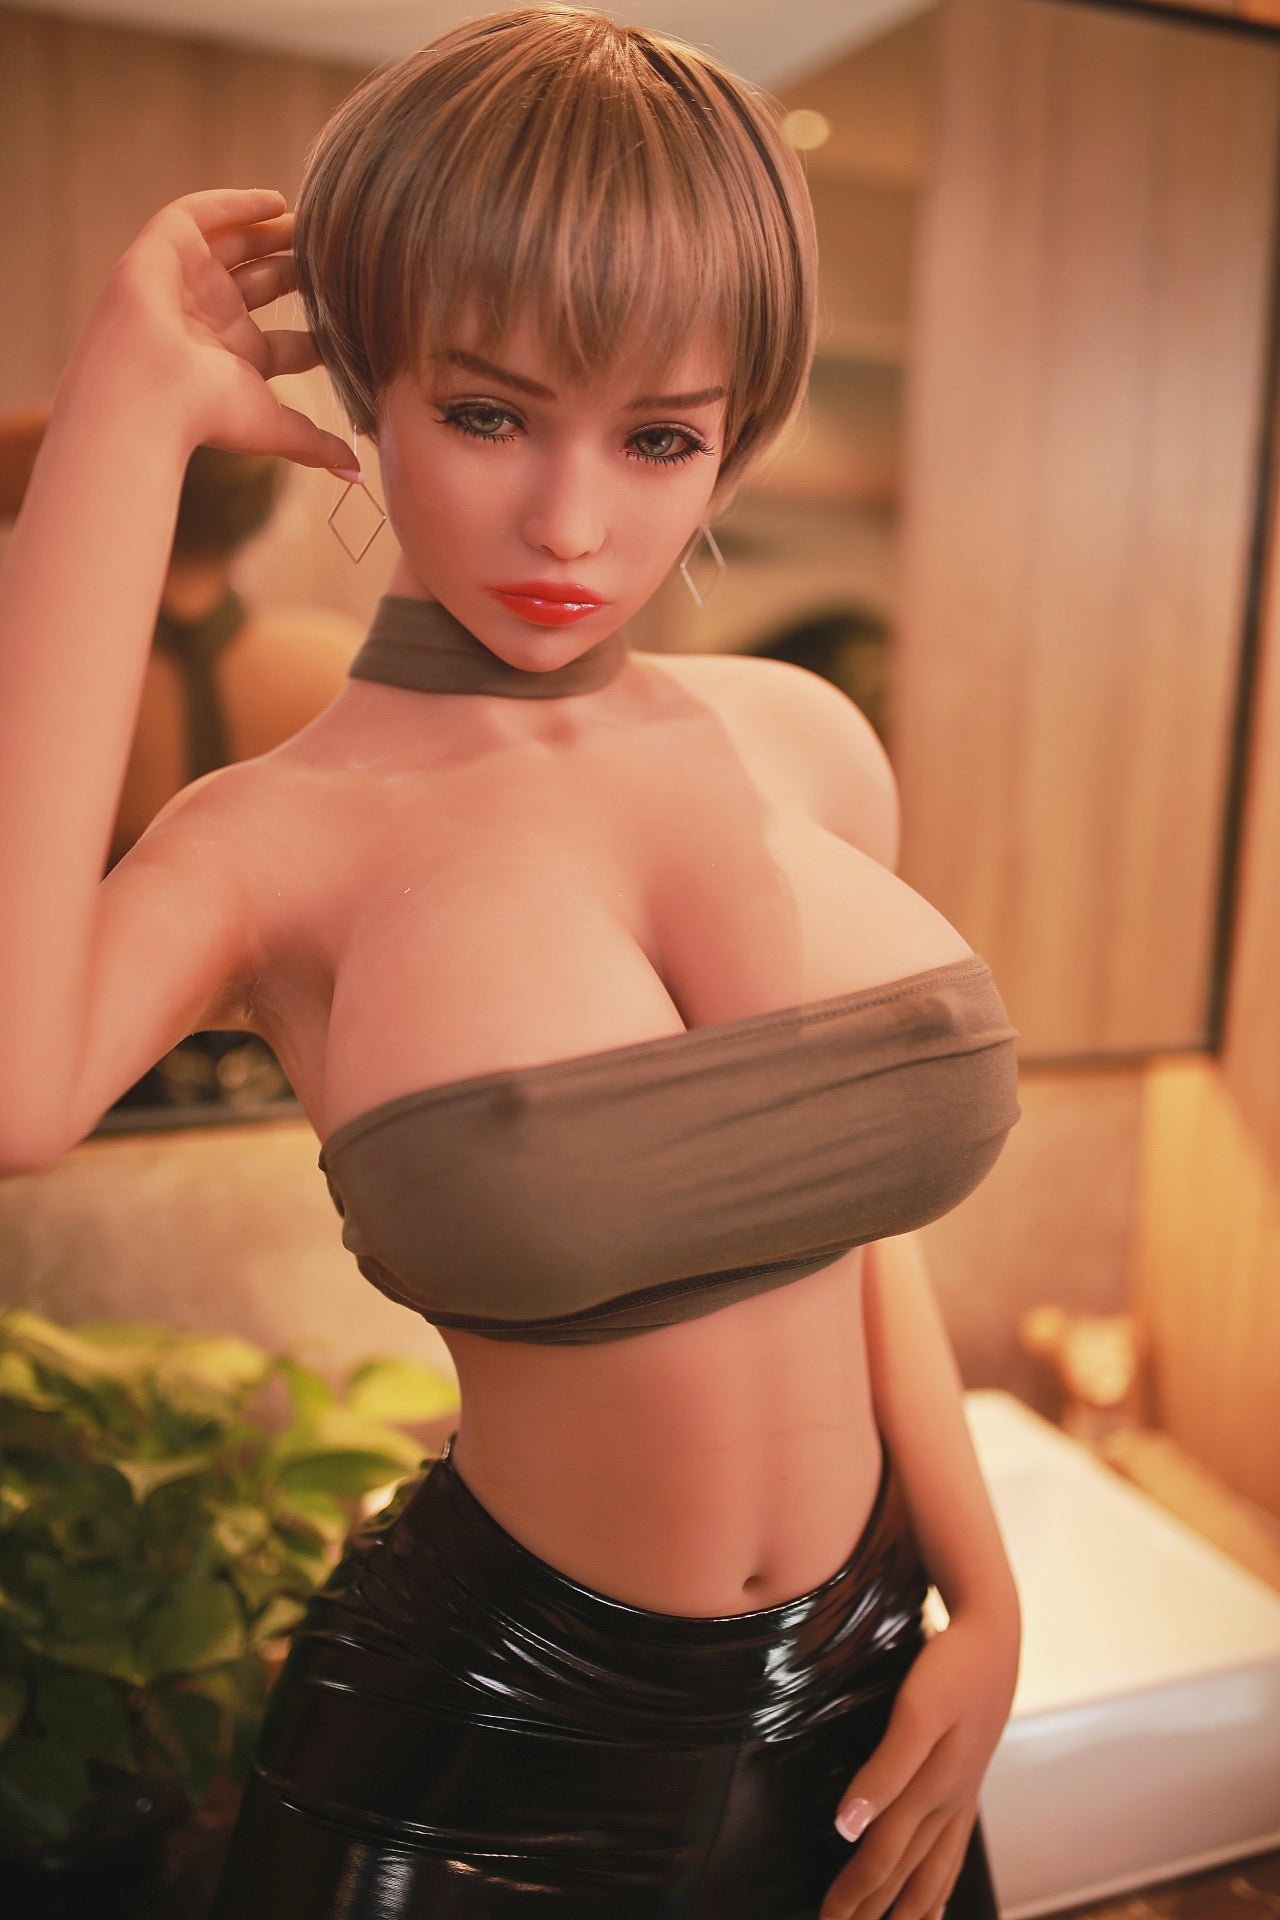 Neodoll Sugar Babe - Mckinley - Realistic Sex Doll - Gel Breast - 170cm - Natural